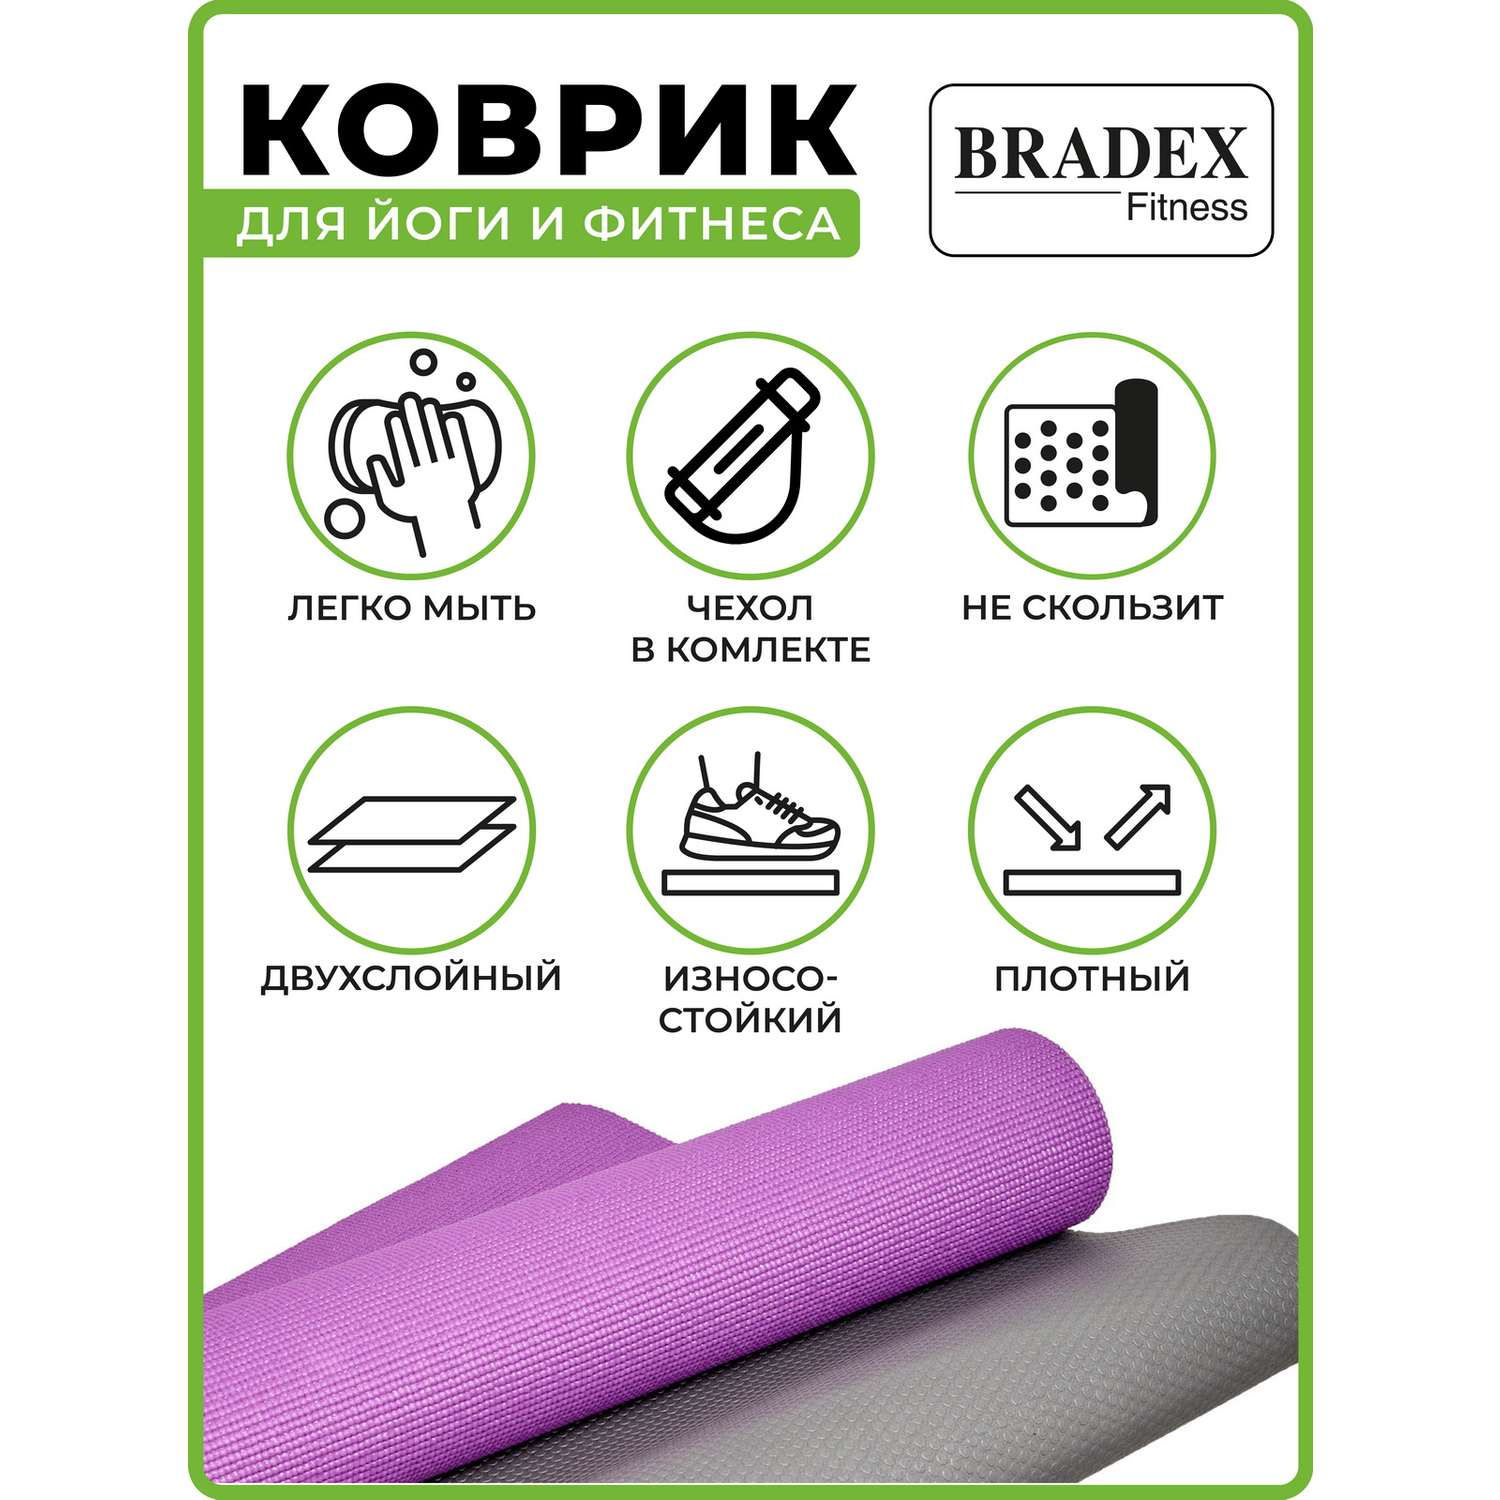 Коврик для йоги и фитнеса Bradex двухслойный фиолетовый 183х61 см - фото 4